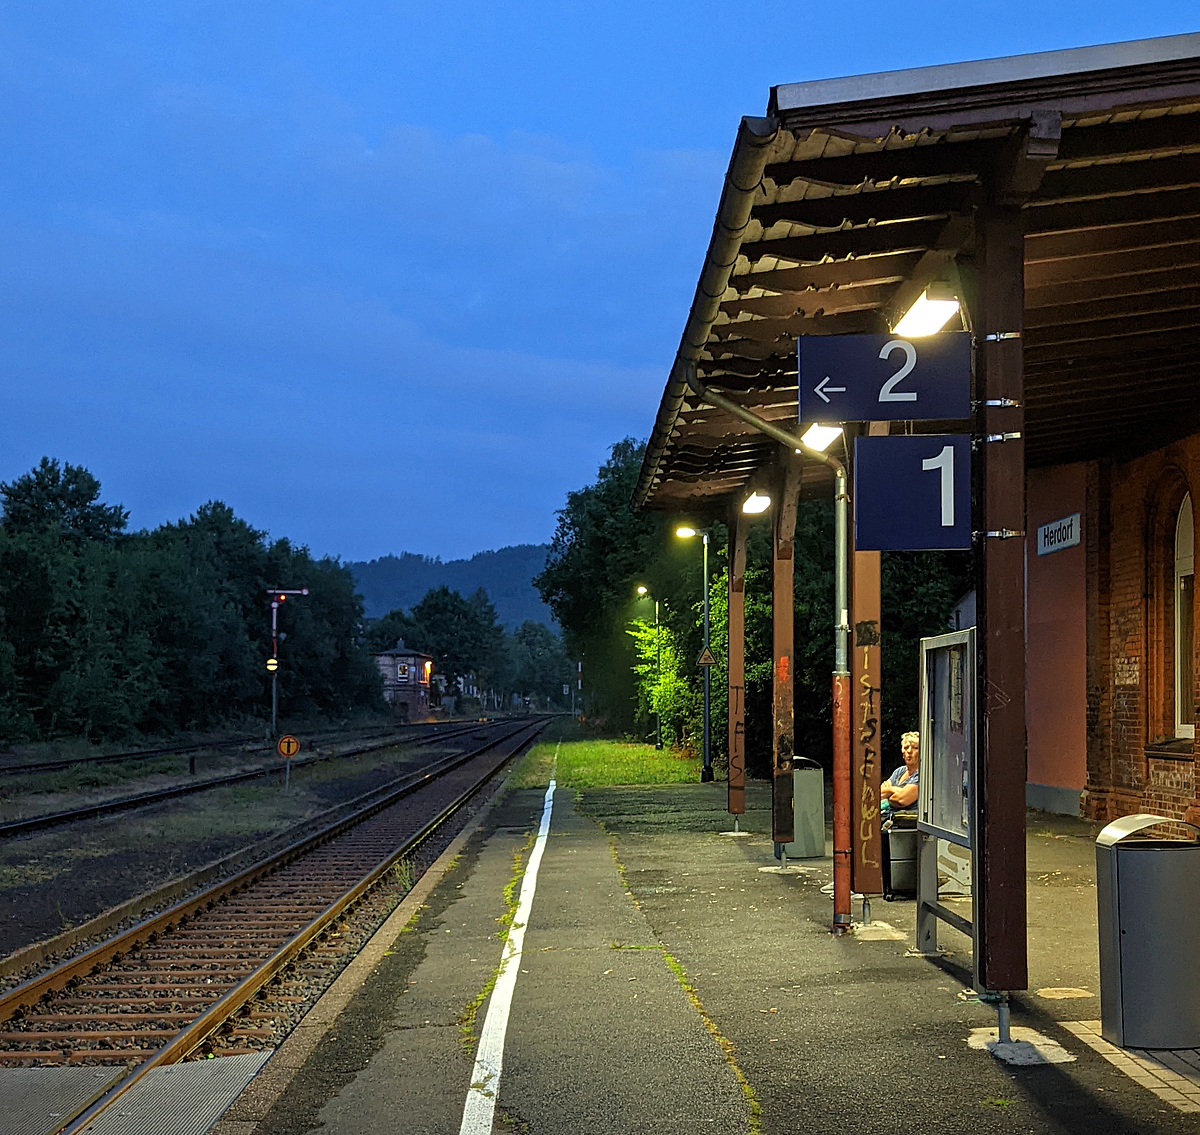 Frühmorgens im Bahnhof Herdorf.....
Der Bahnhof Herdorf am 11.07.2022 um kurz vor 5 Uhr.
Das Bild wurde mit dem Smartphone gemacht.
